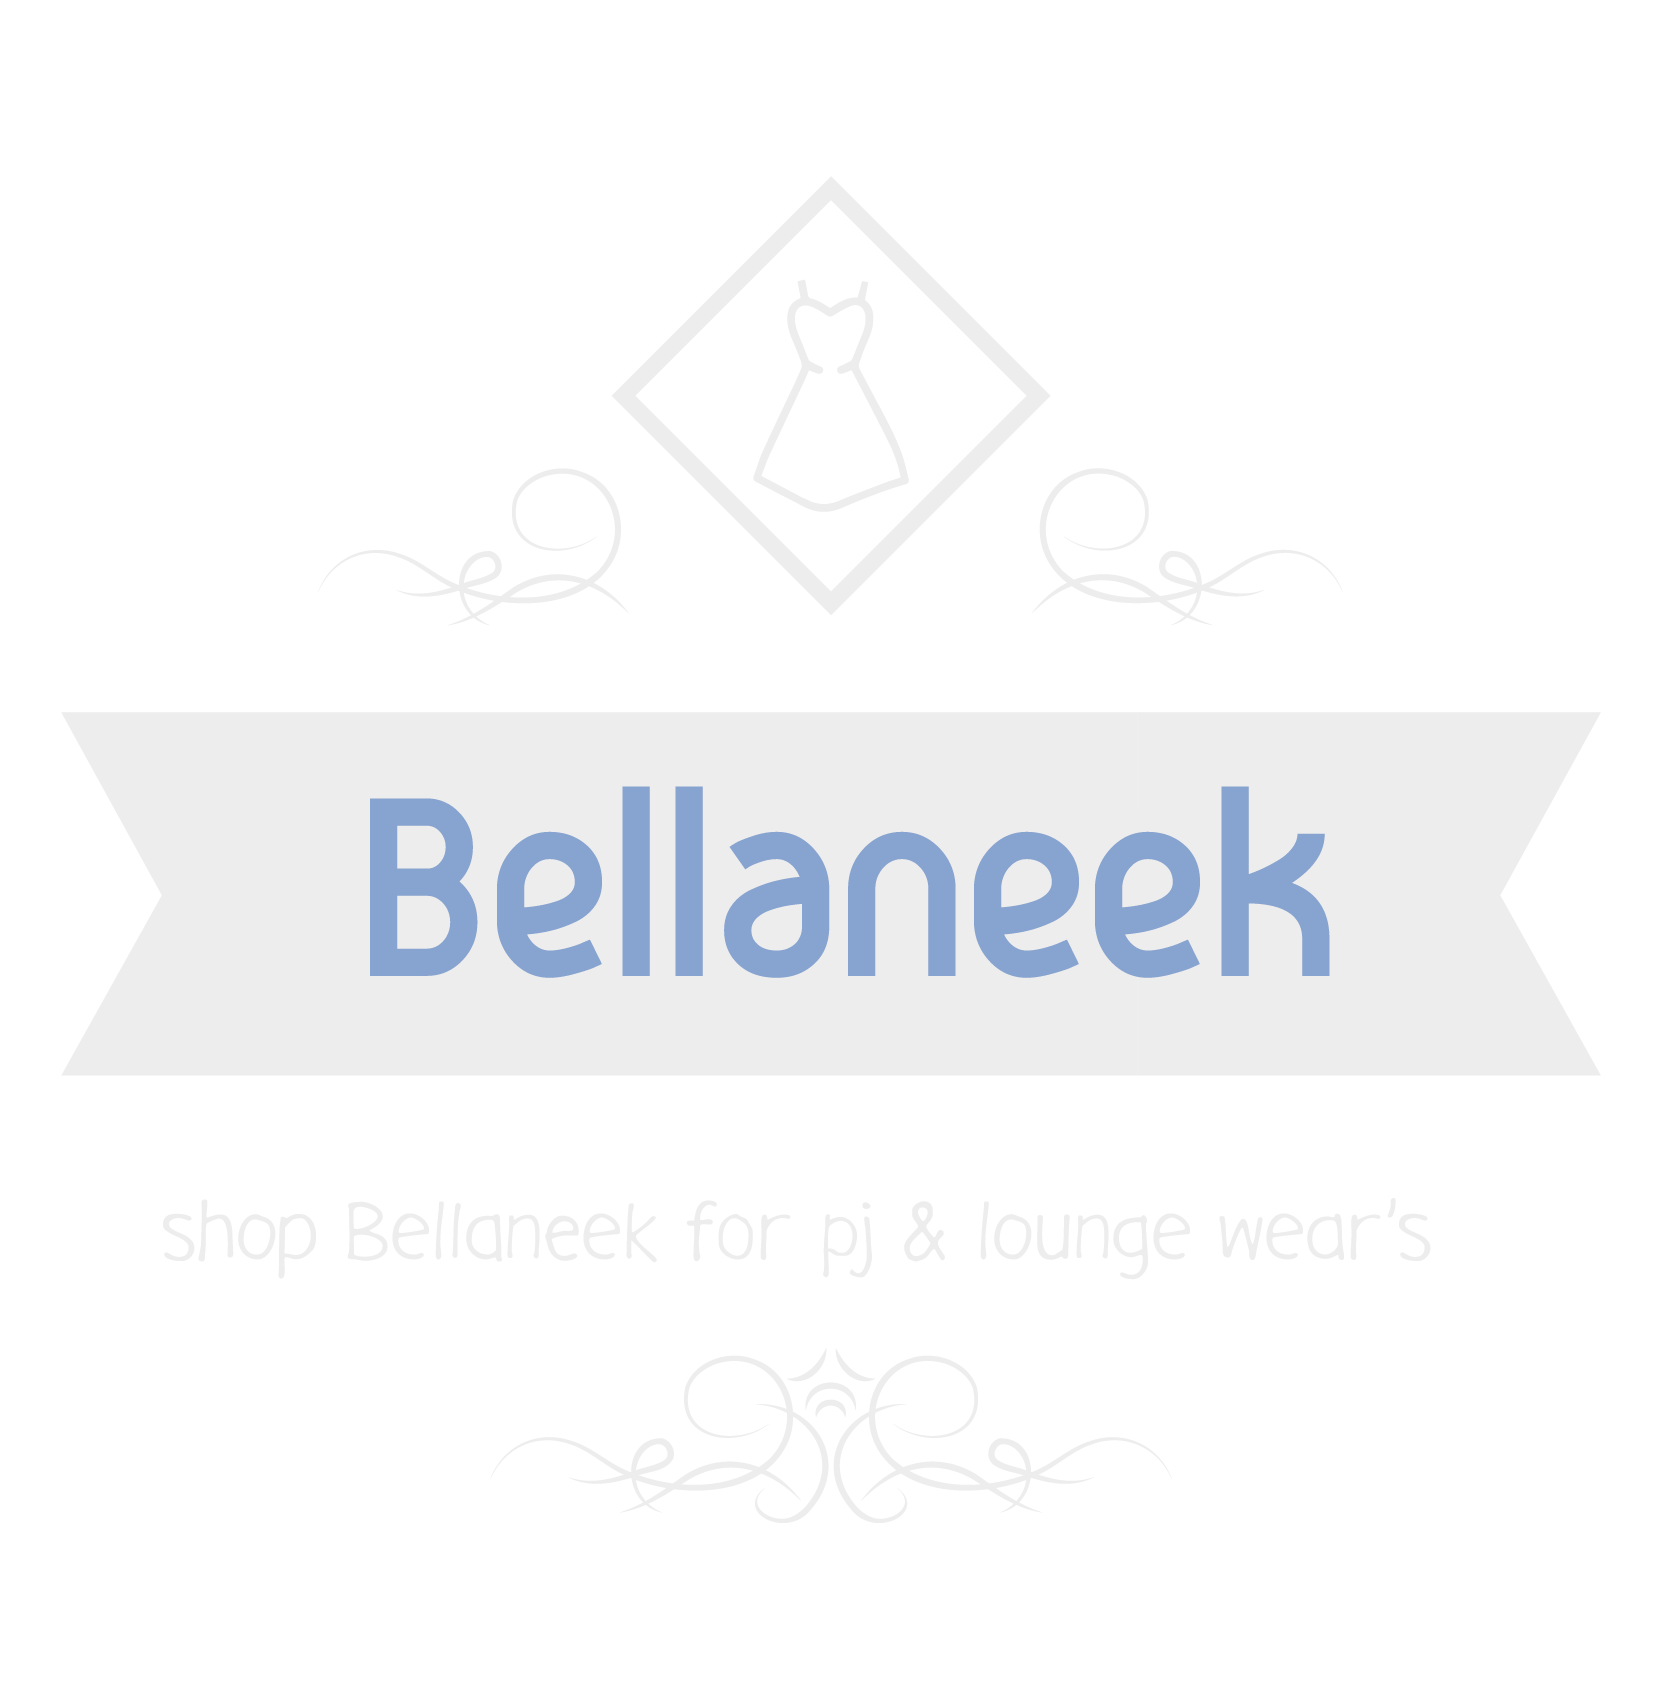 BellaNeek